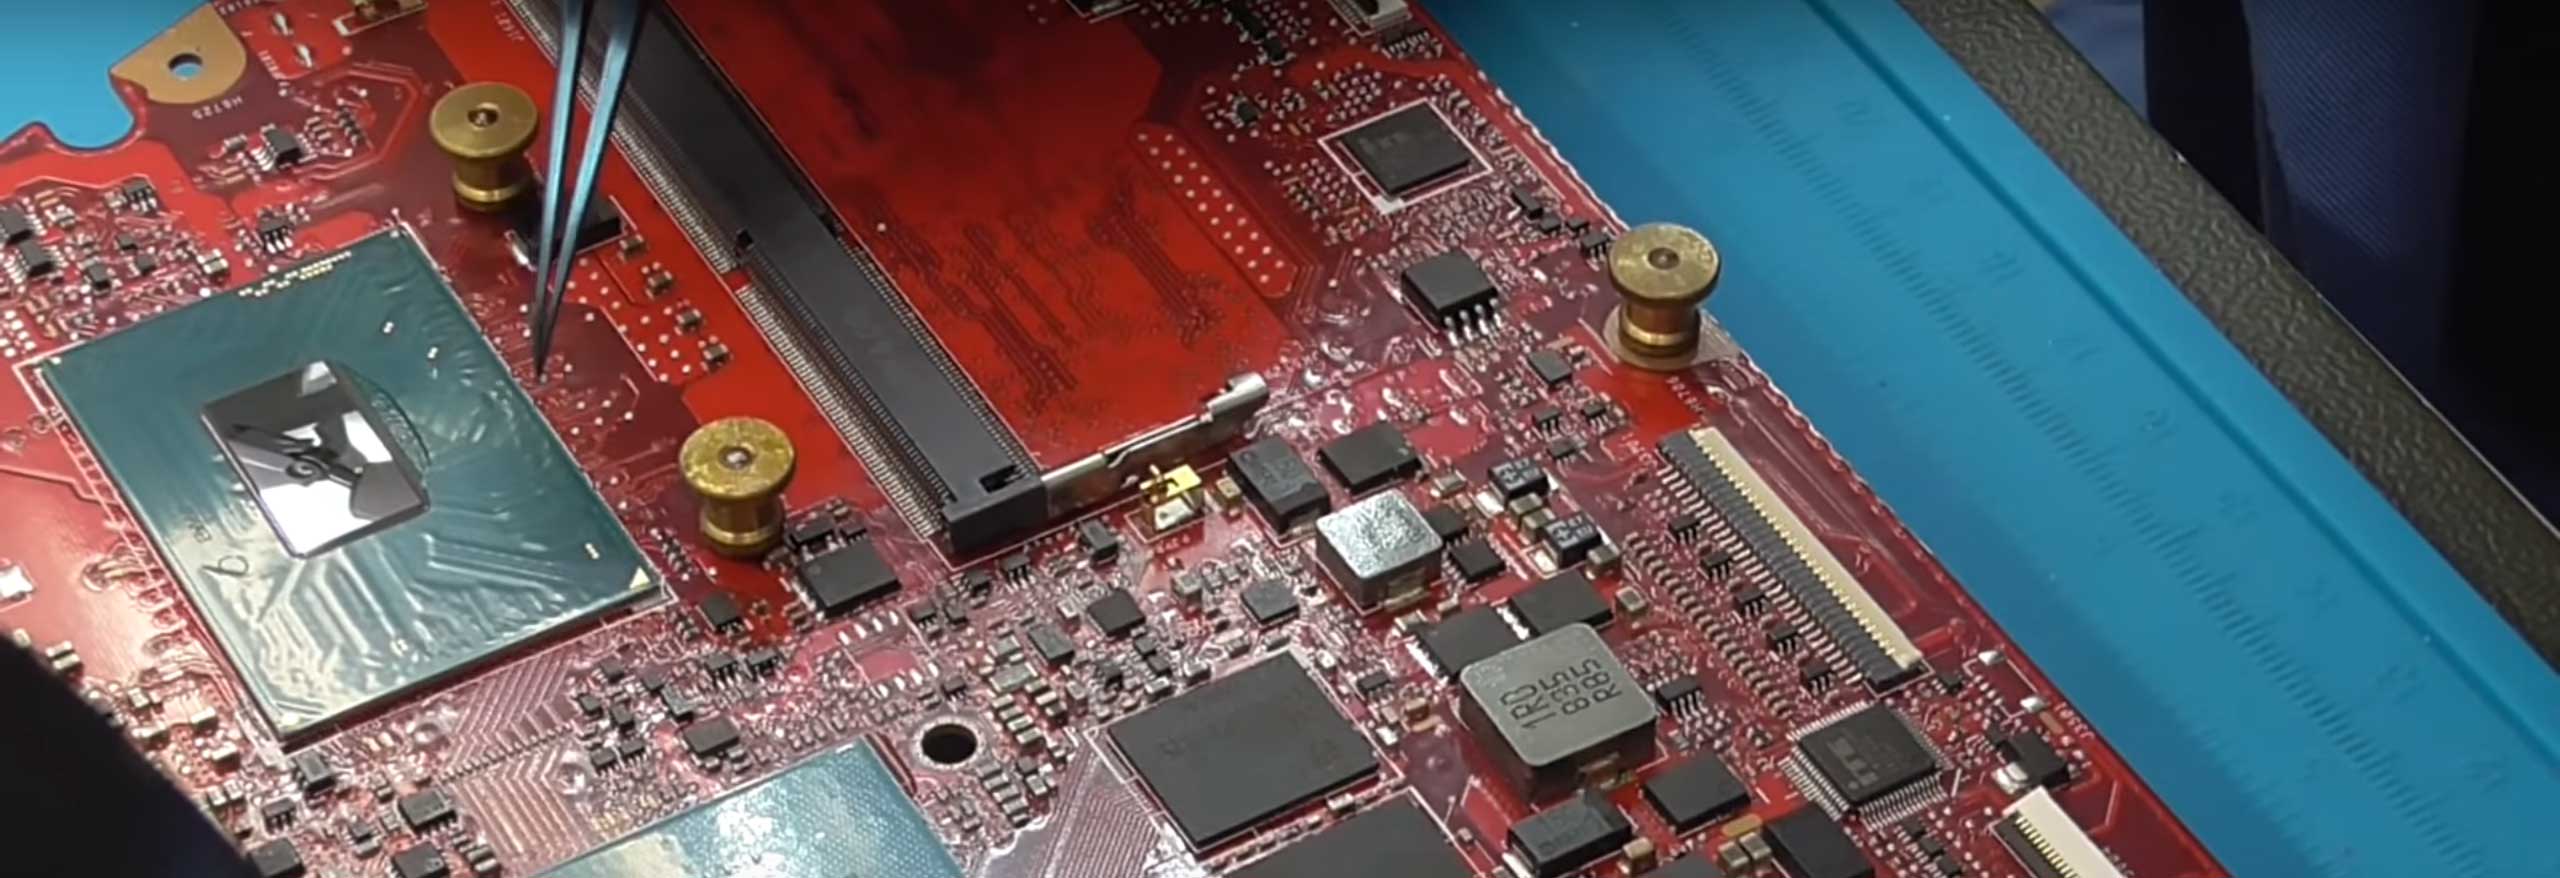 Sửa chữa - thay thế CPU dán, chipset trên laptop